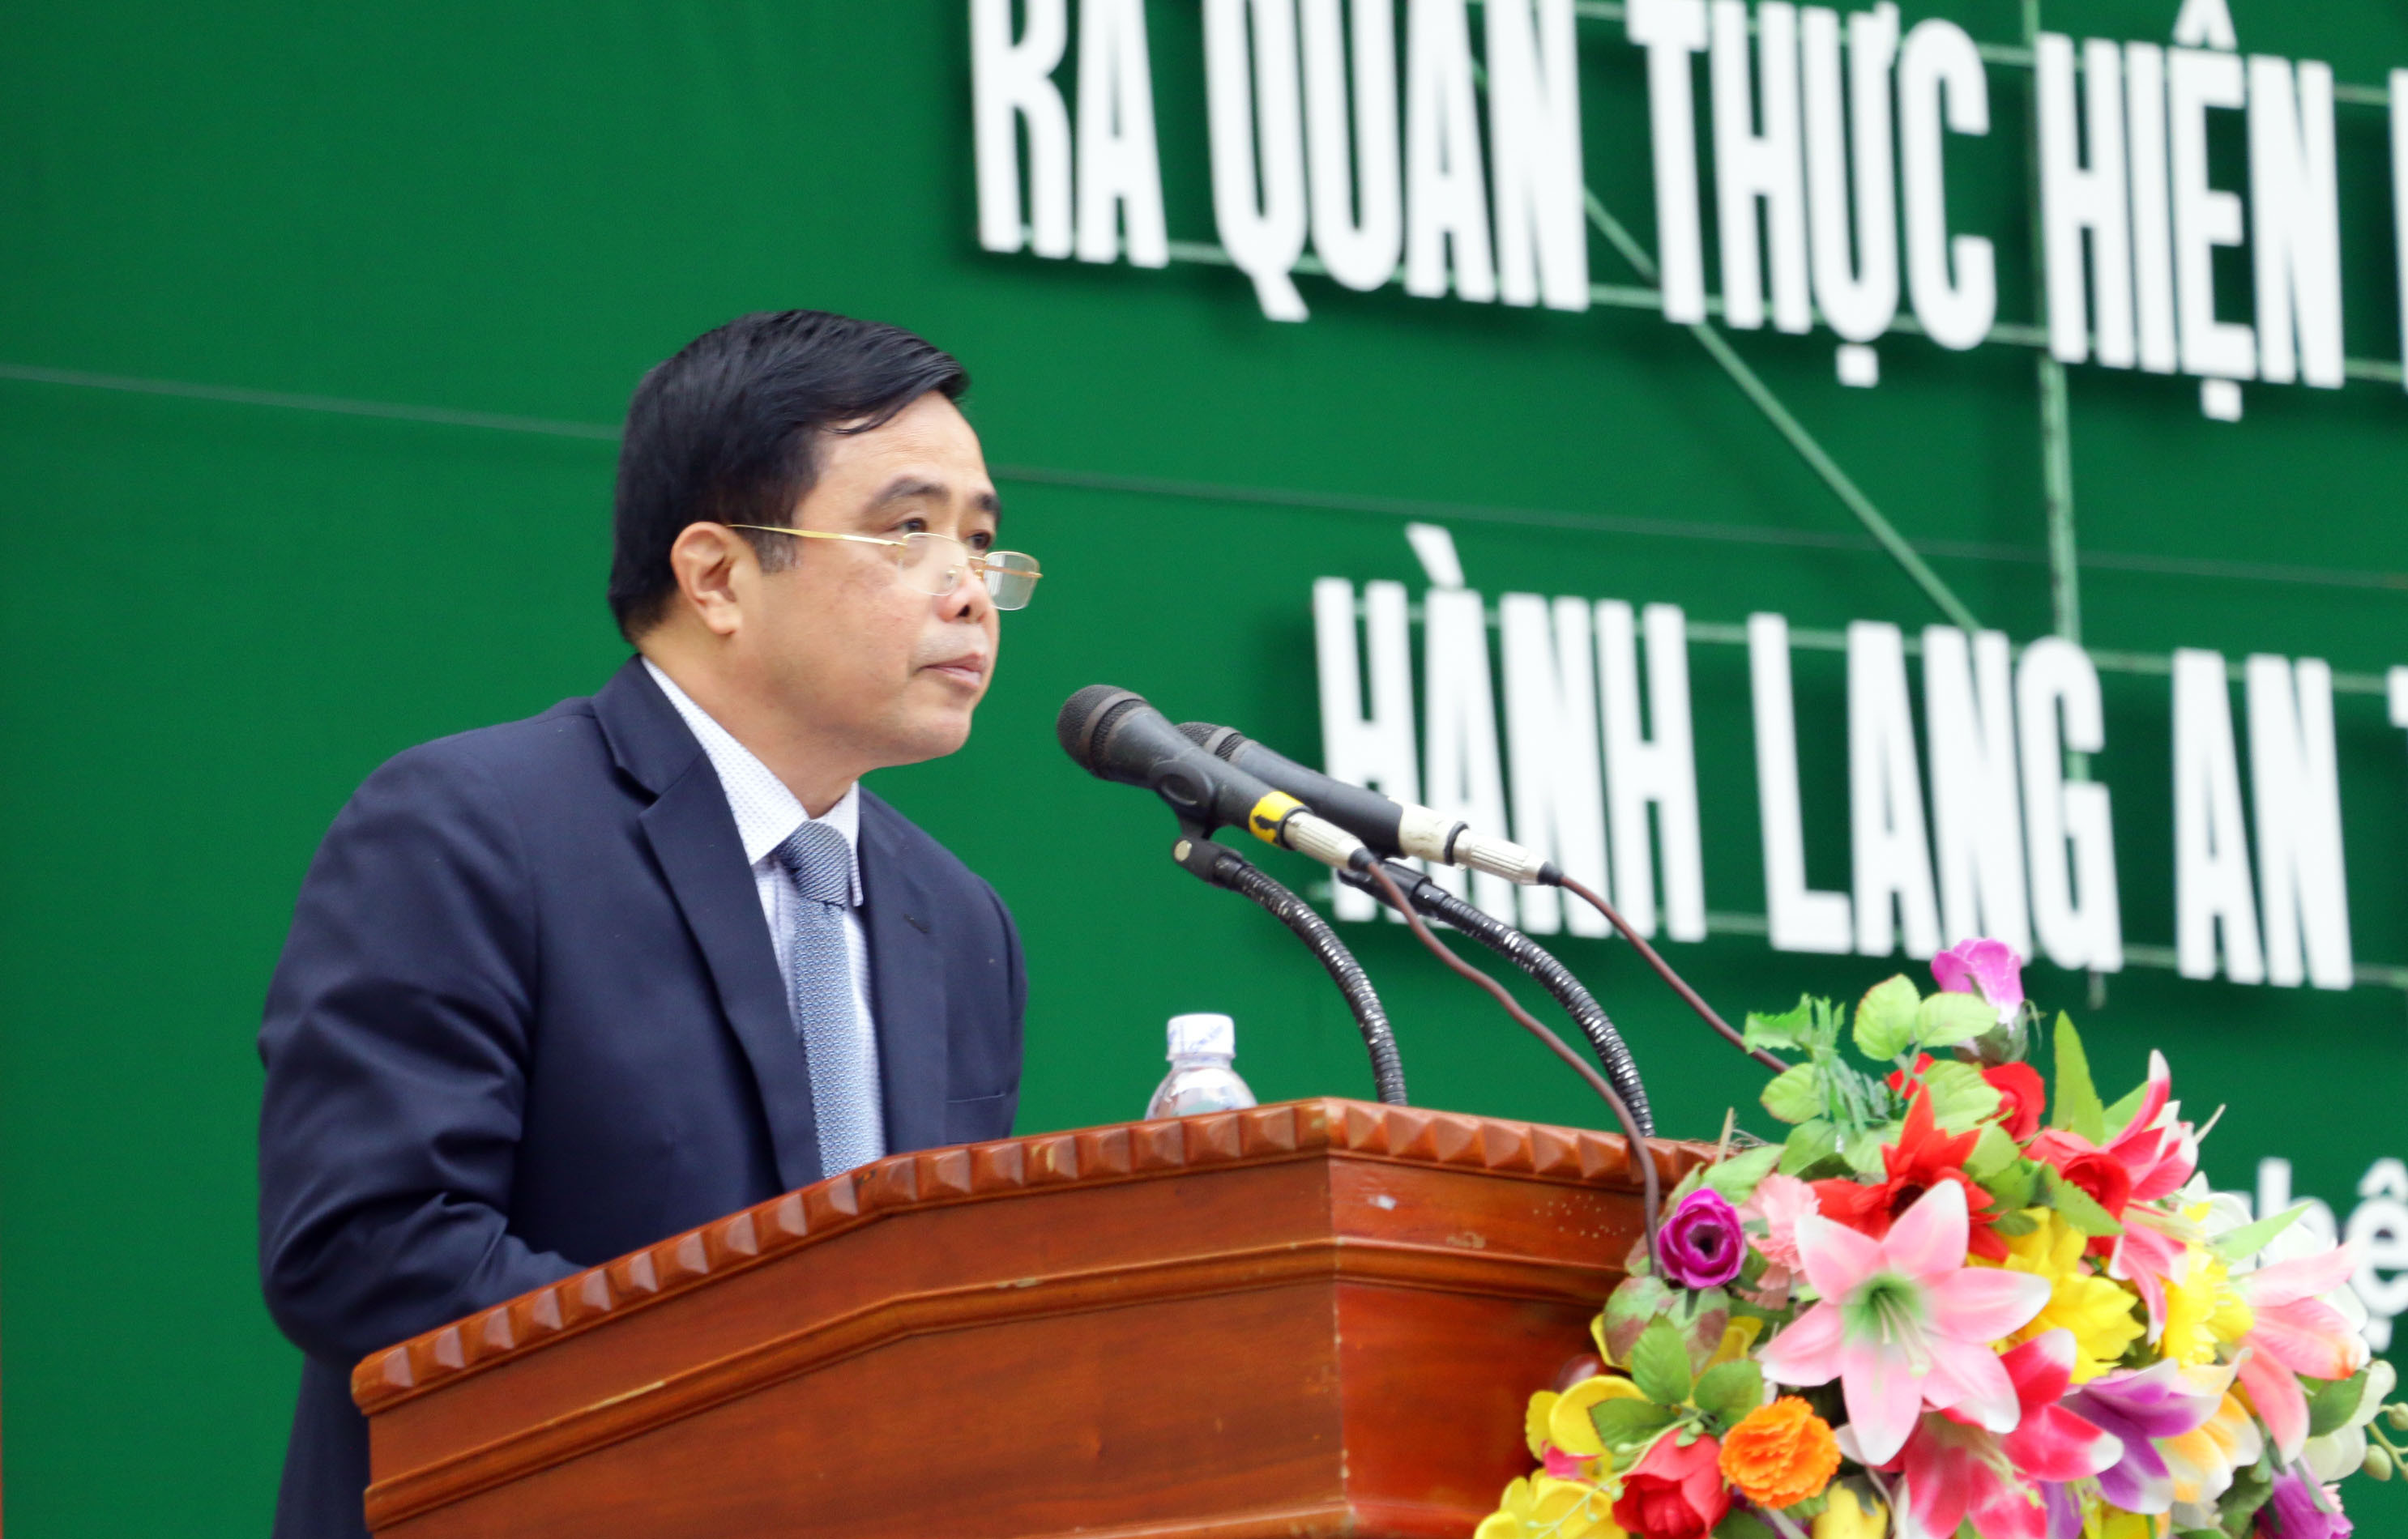 Đồng chí Huỳnh Thanh Điền phát biểu đề nghị các địa phương thực hiện nghiêm túc Năm An toàn giao thông. Ảnh: Mỹ Hà